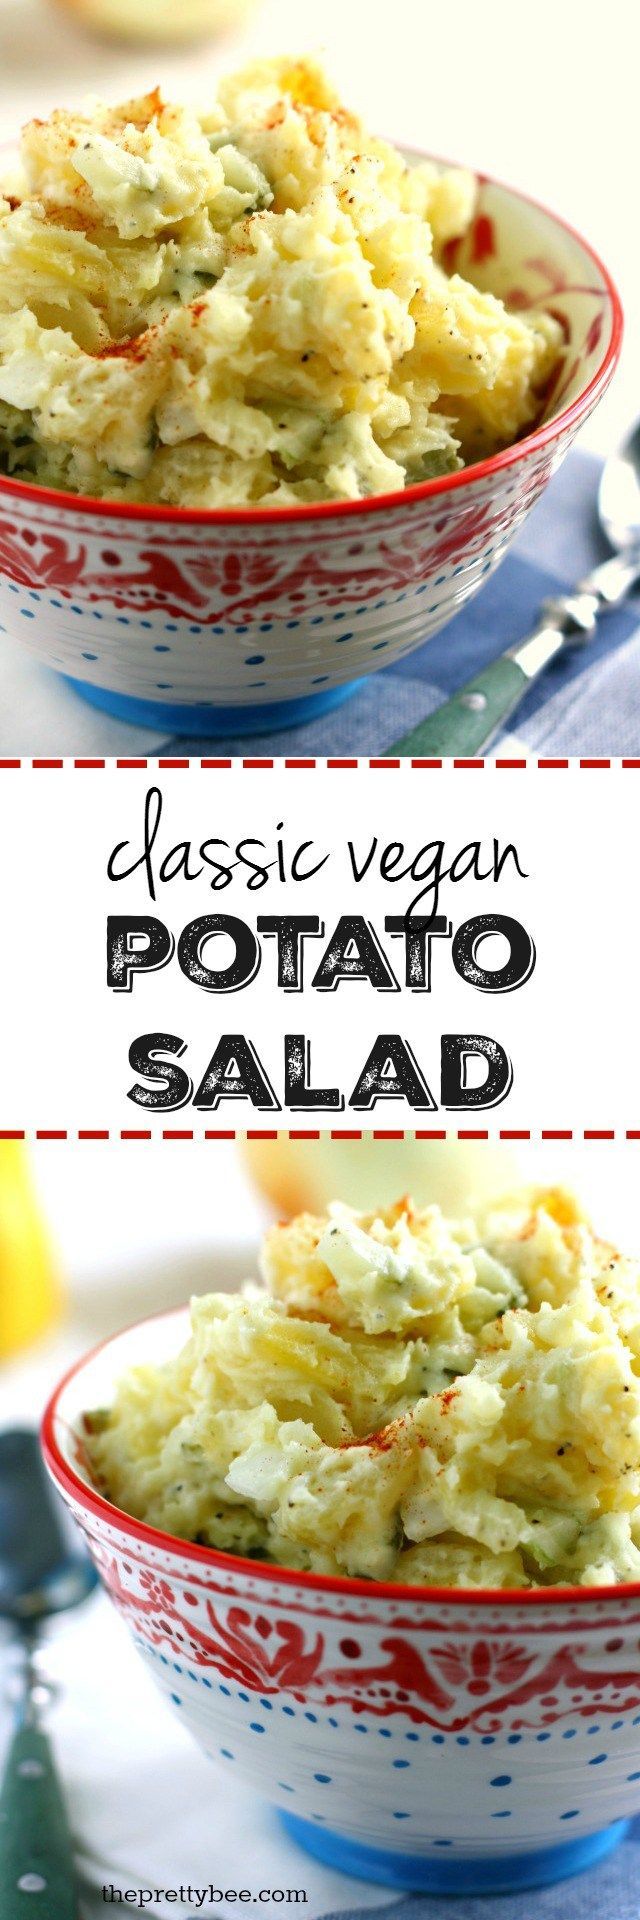 A classic vegan potato salad recipe – perfect for summer parties and picnics!